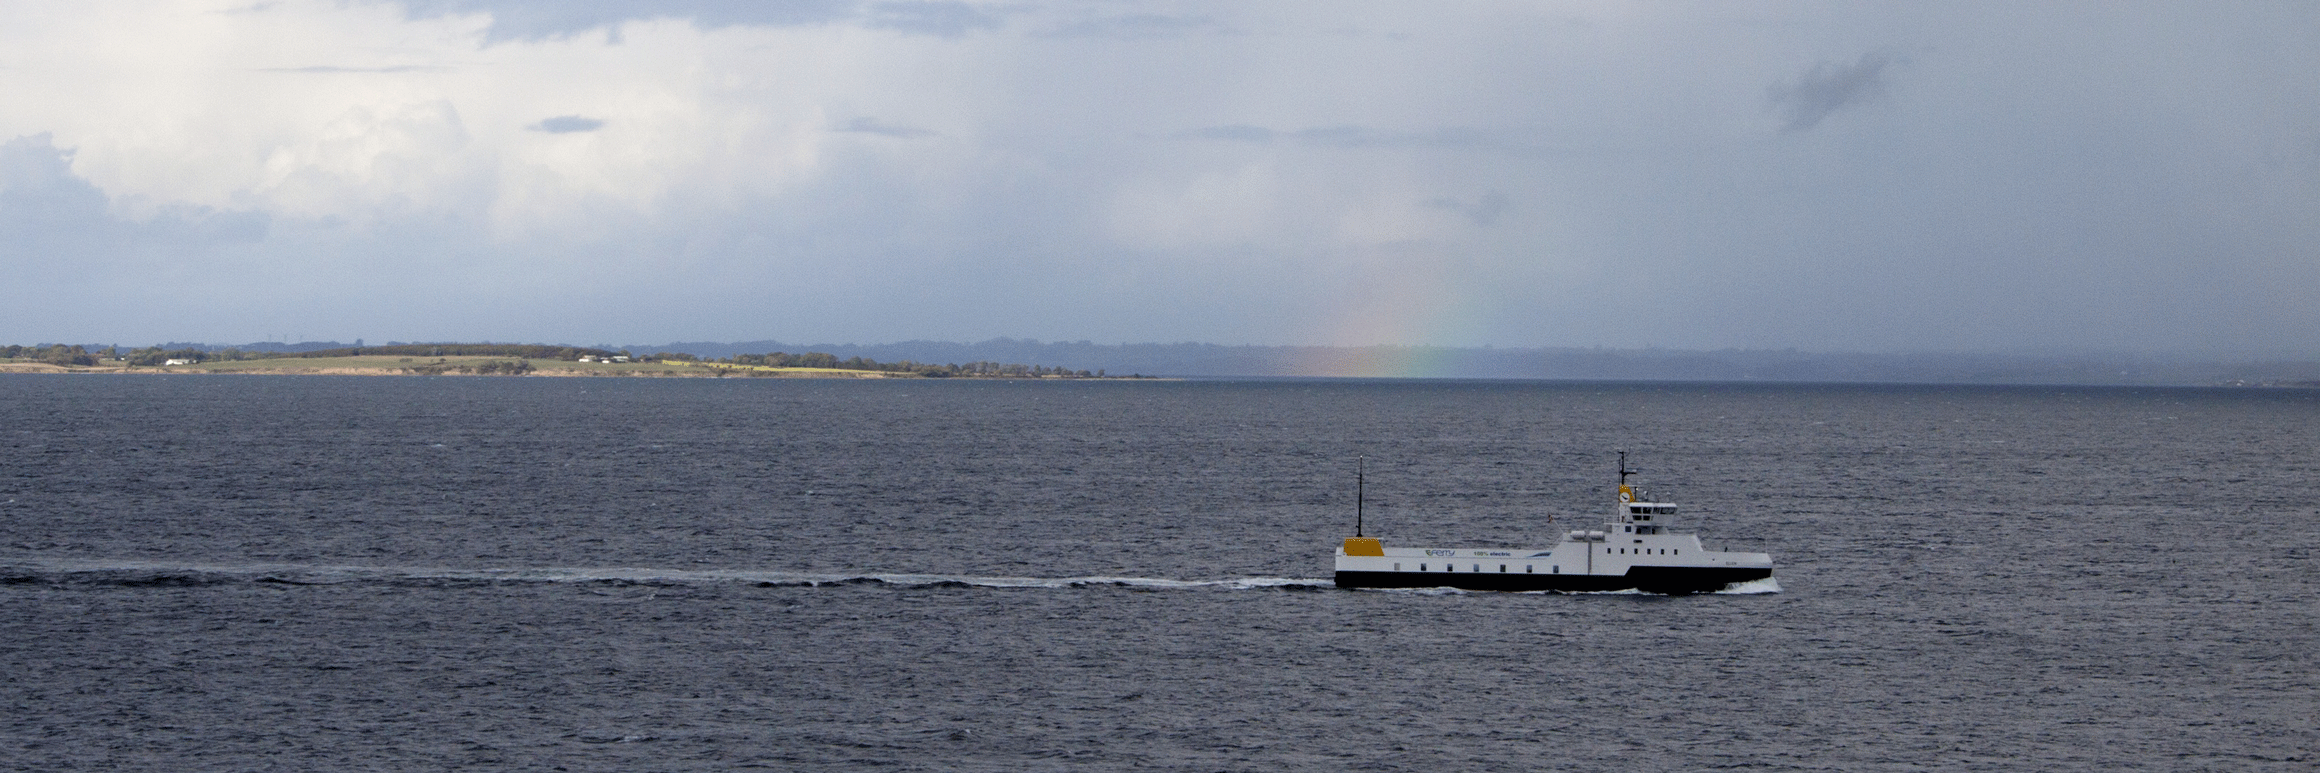 Die Elektrofähre Ellen fährt über das offene Meer.